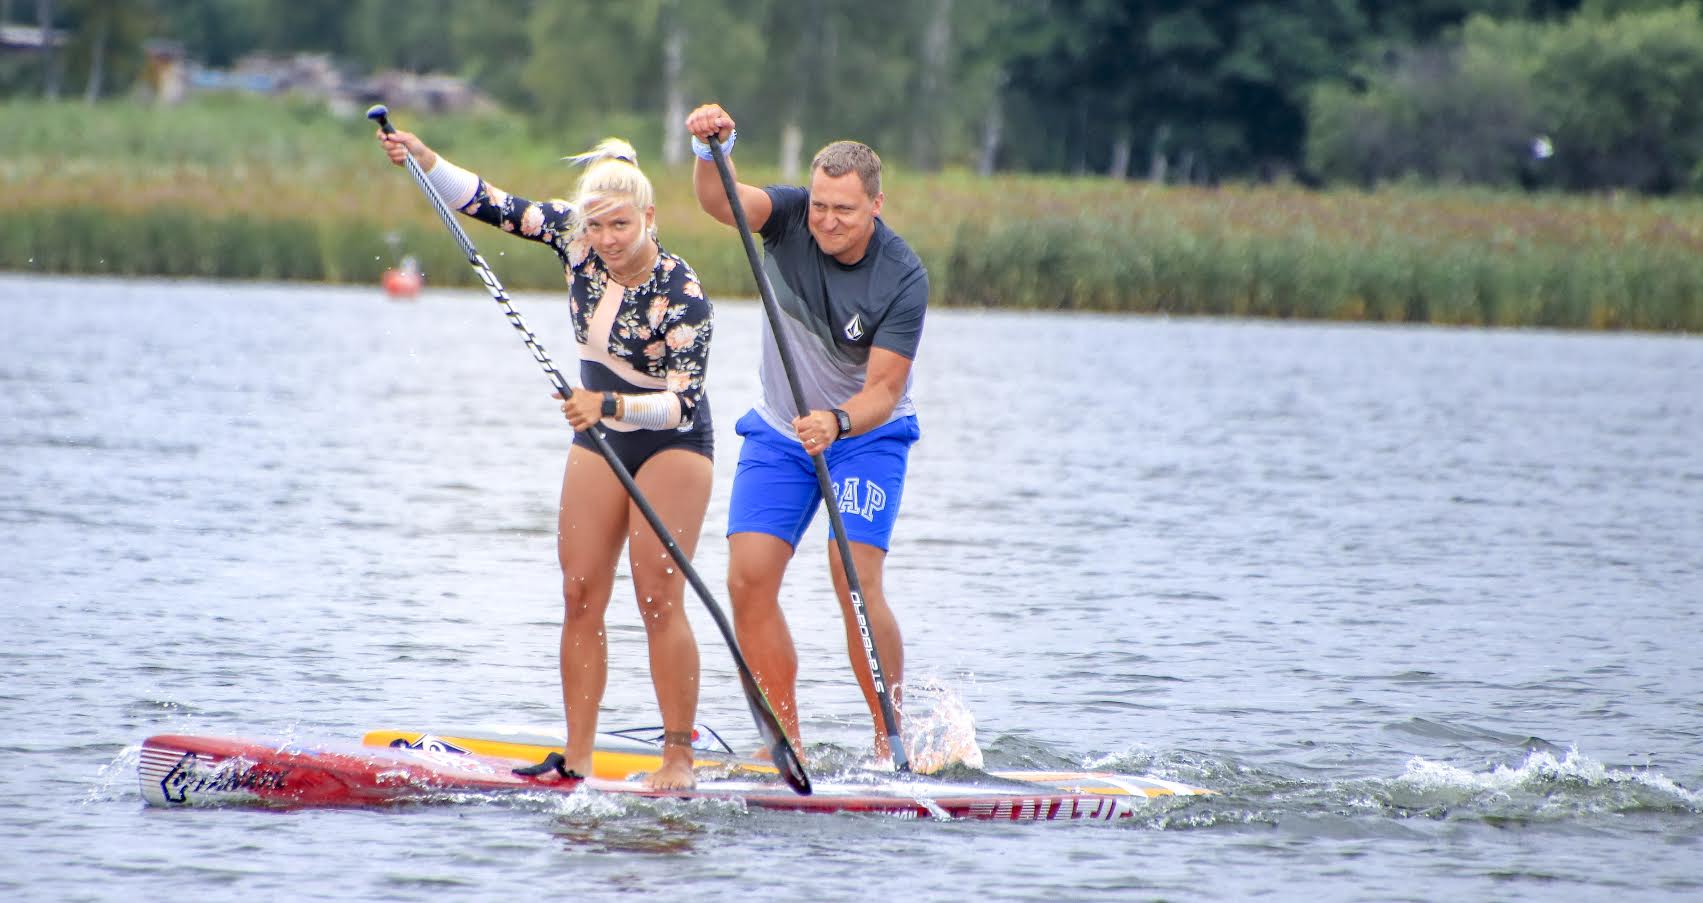 Betti Vainküla (Surfhouse/Pirita Surfiklubi), kes lõpetas võistluse kiirema naisena, ning Tõnis Metstak (Sunlovers), kes saavutas Eliit klassis viienda koha. Foto: AIGAR NAGEL